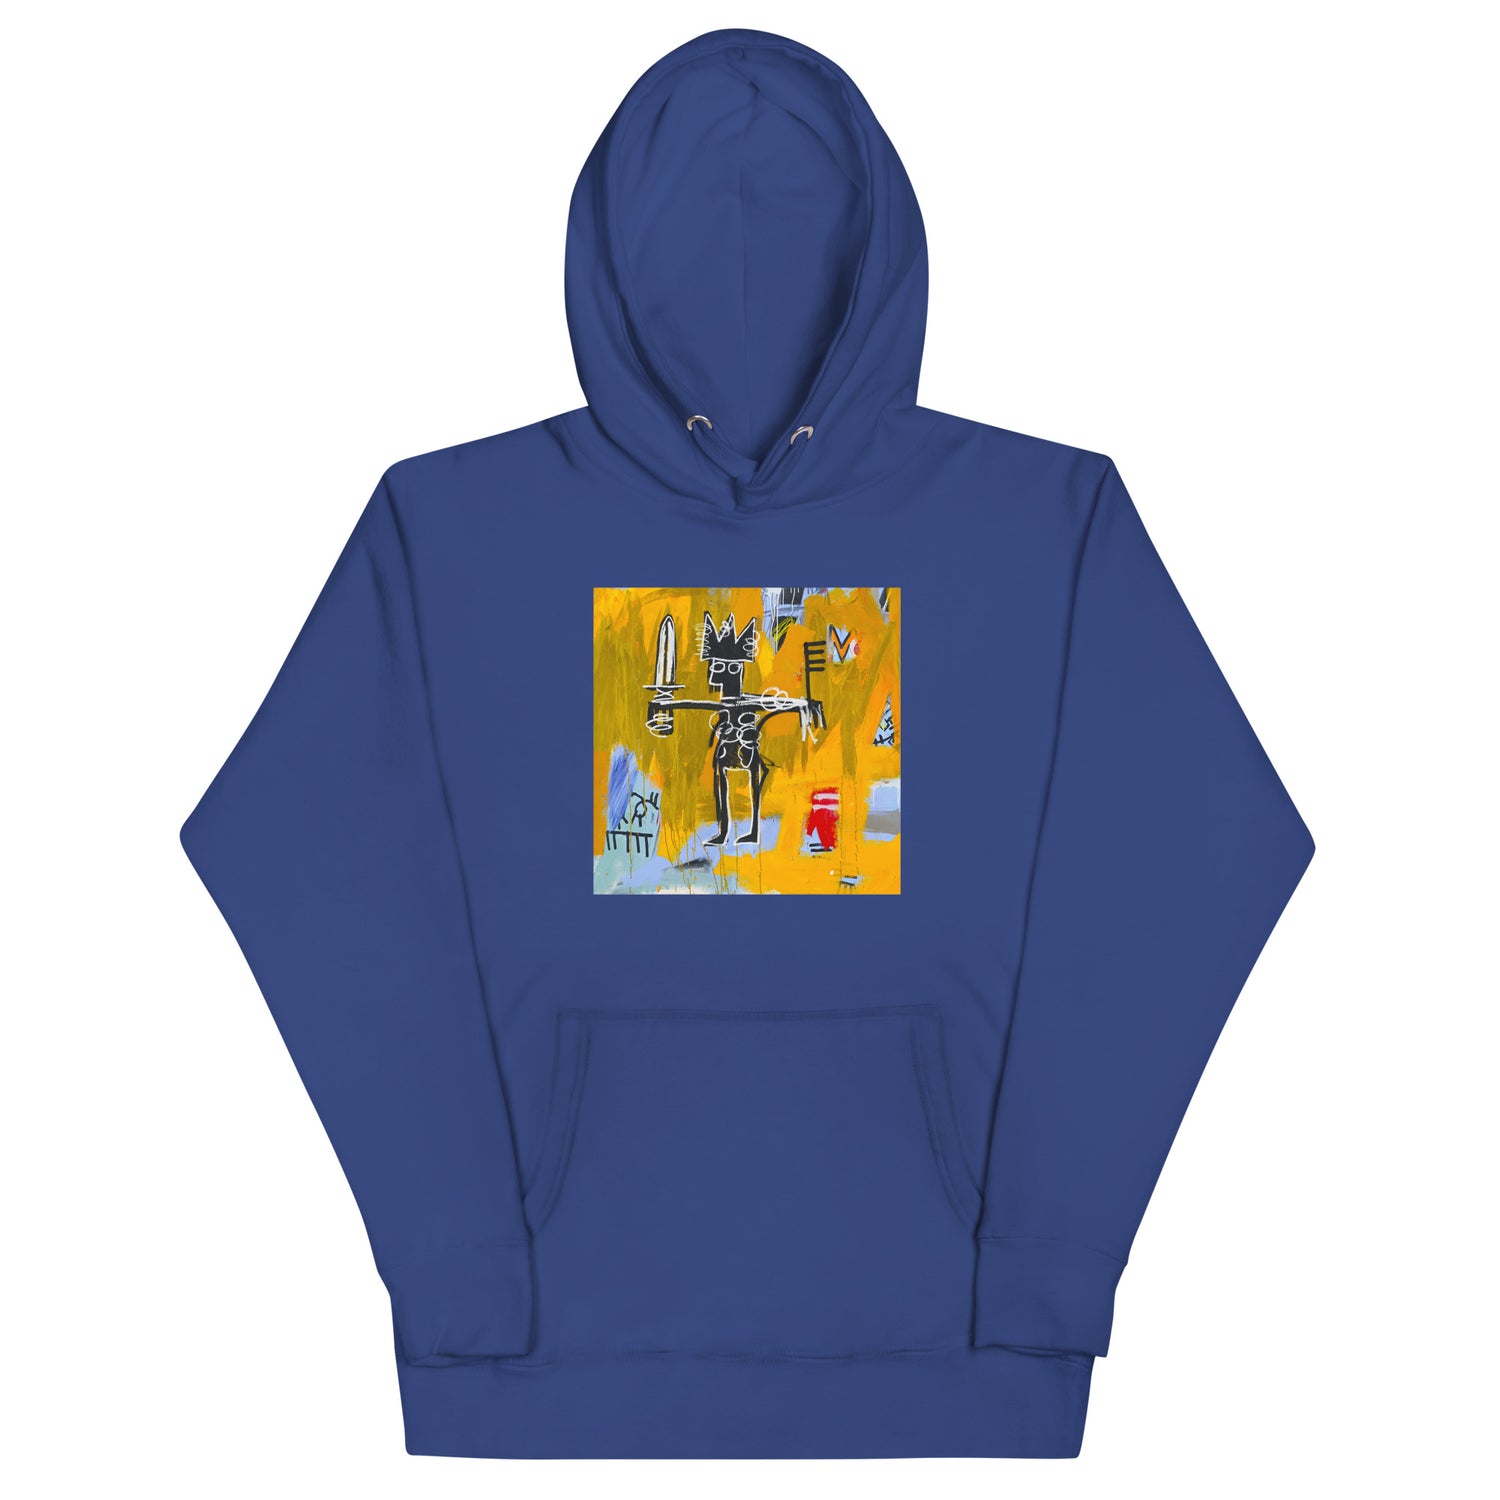 Jean-Michel Basquiat "Julius Caesar on Gold" Artwork Printed Premium Streetwear Sweatshirt Hoodie Royal Blue